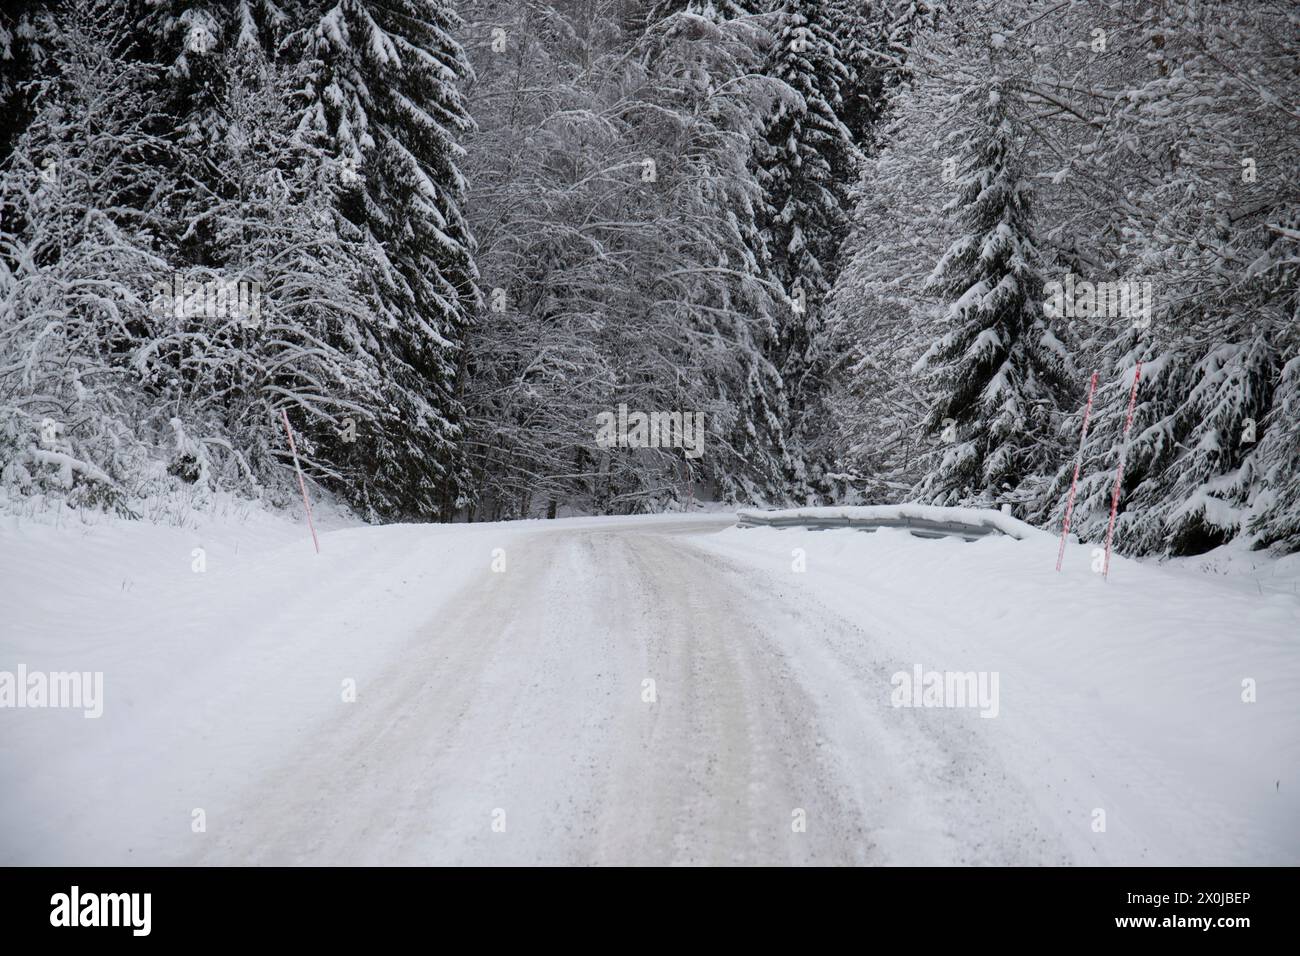 Paysage hivernal enneigé, une route à travers une forêt de pins et d'épicéas enneigés en Suède Banque D'Images